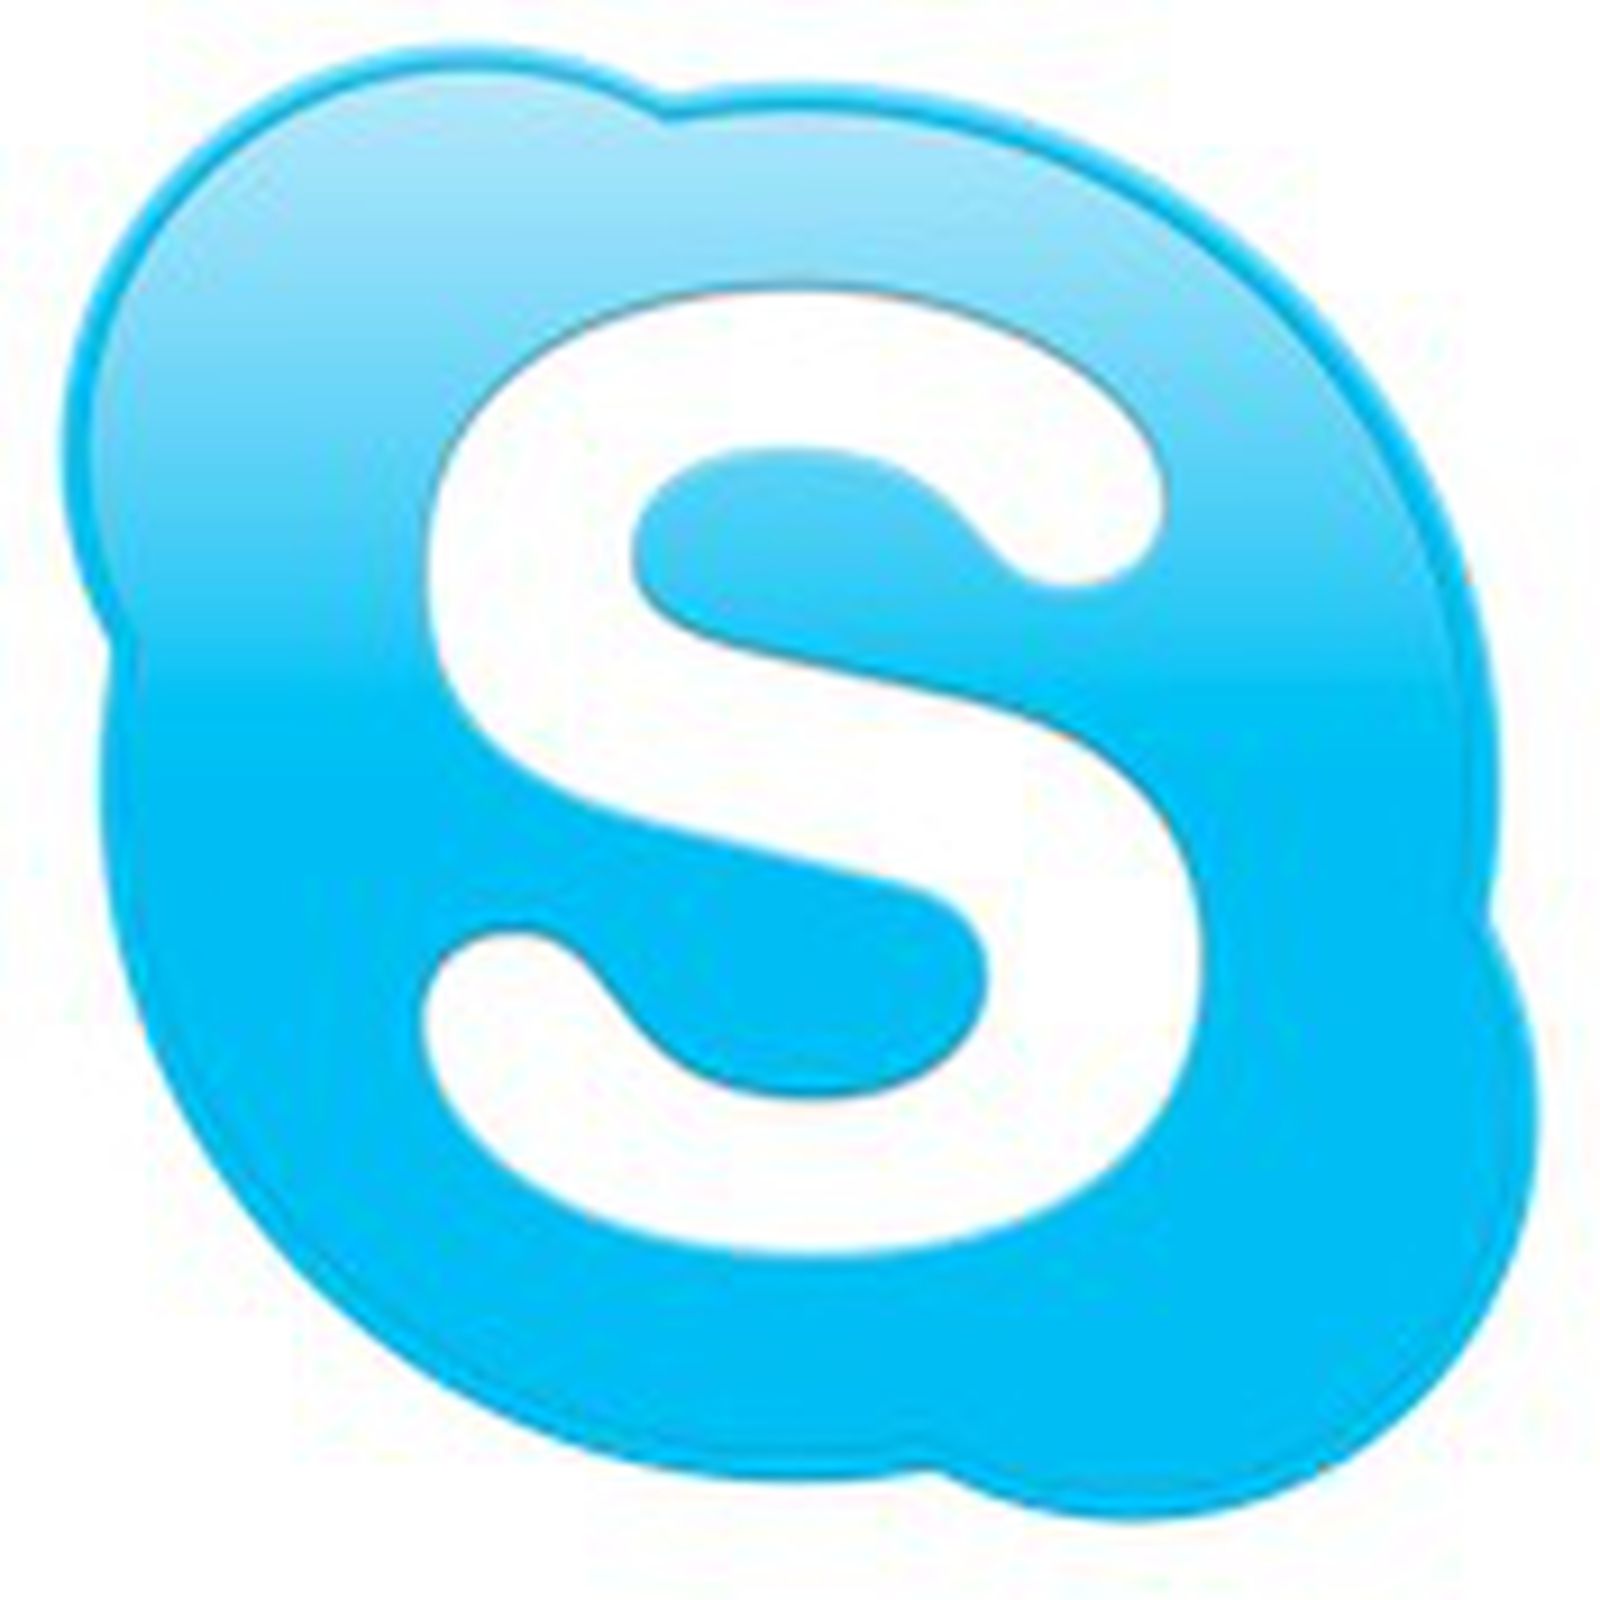 skype for mac earlier versions